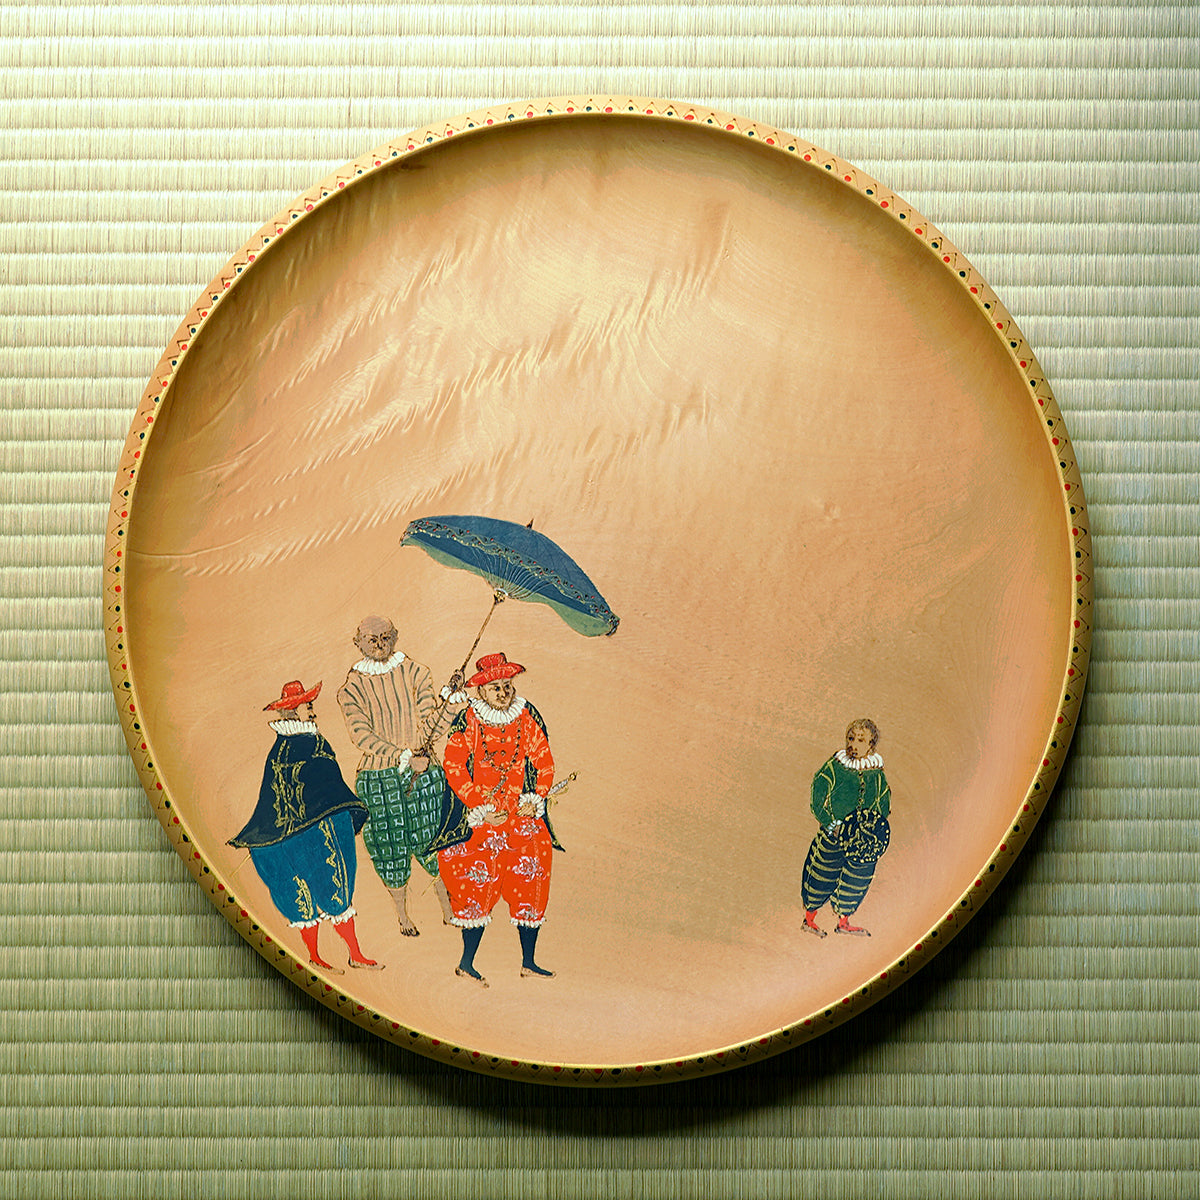 アンリ 木彫り 飾り皿 2500個限定美術品/アンティーク - limarru ...